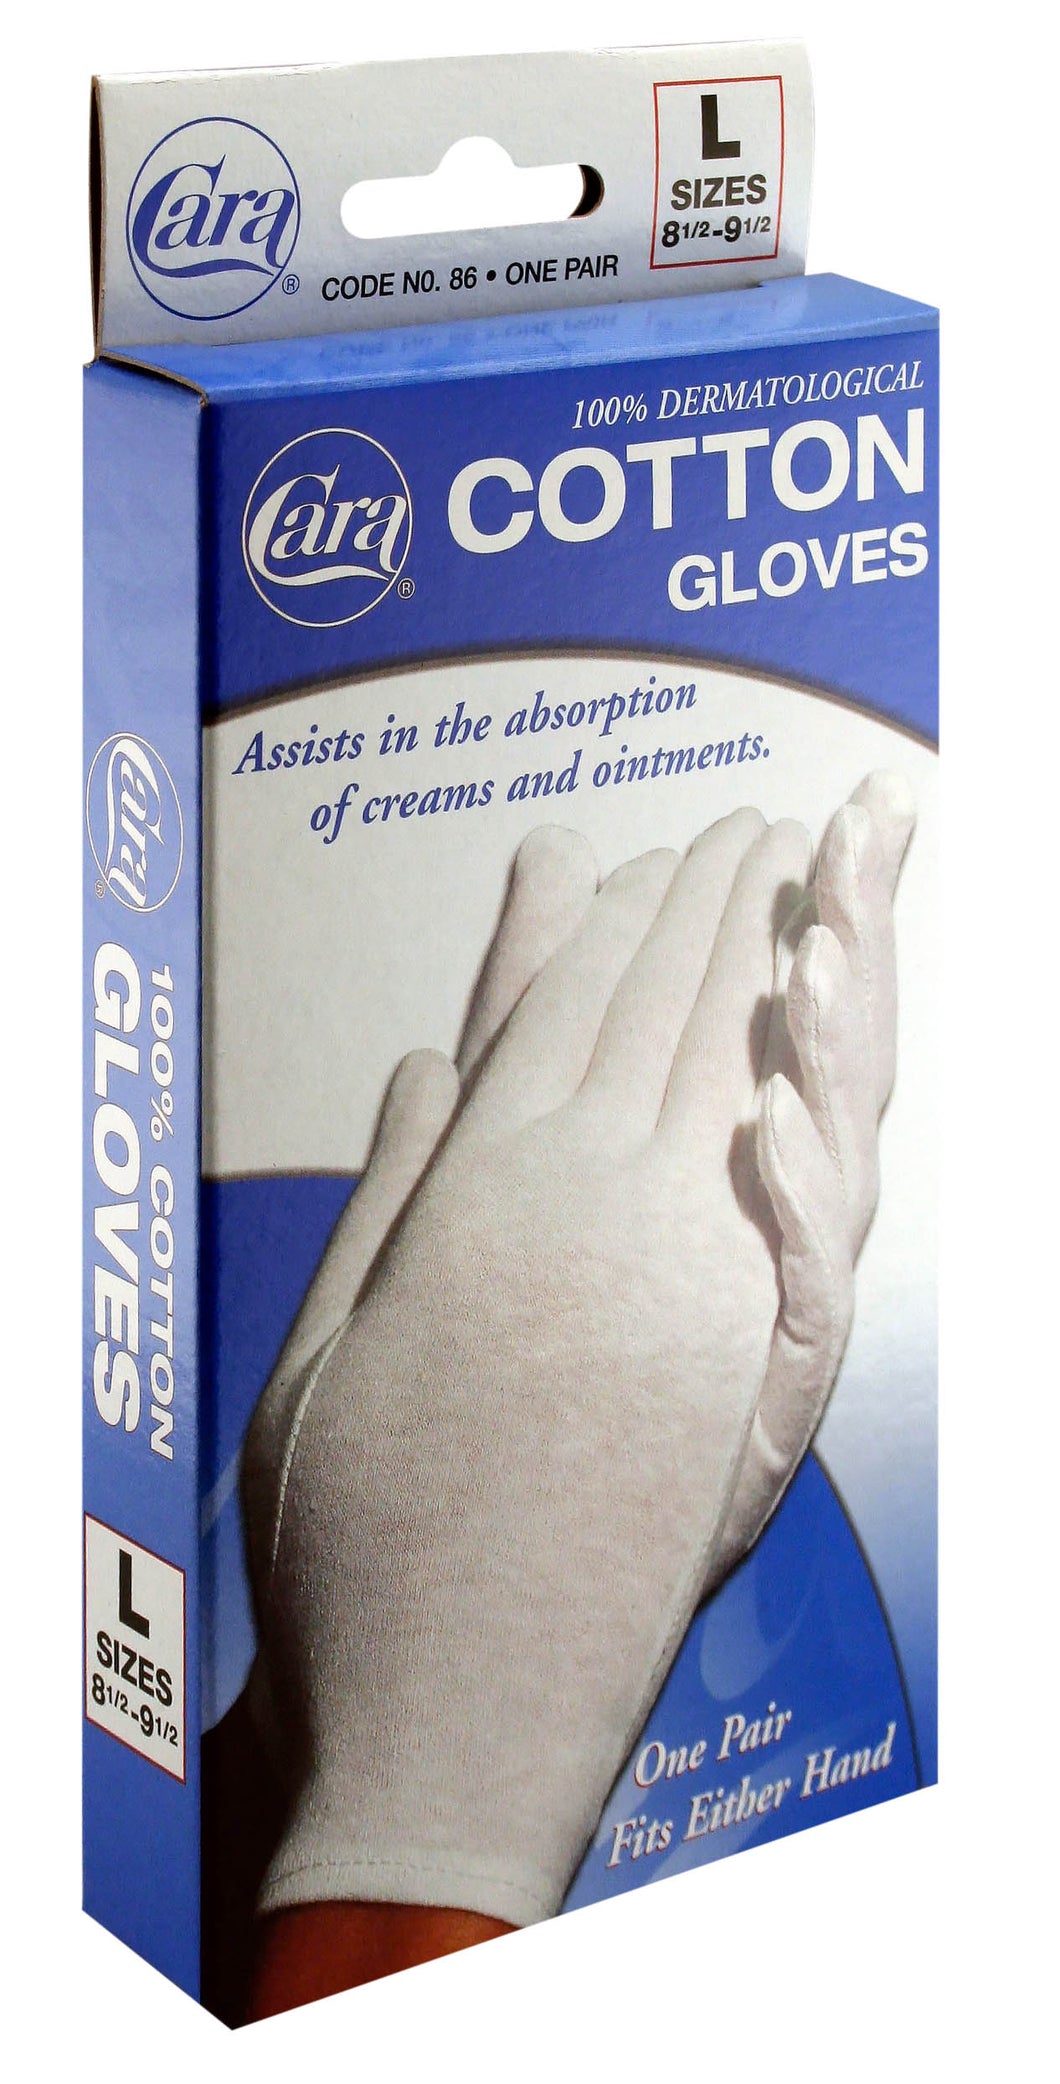 Model #86 - Dermatological Cotton Gloves, Large